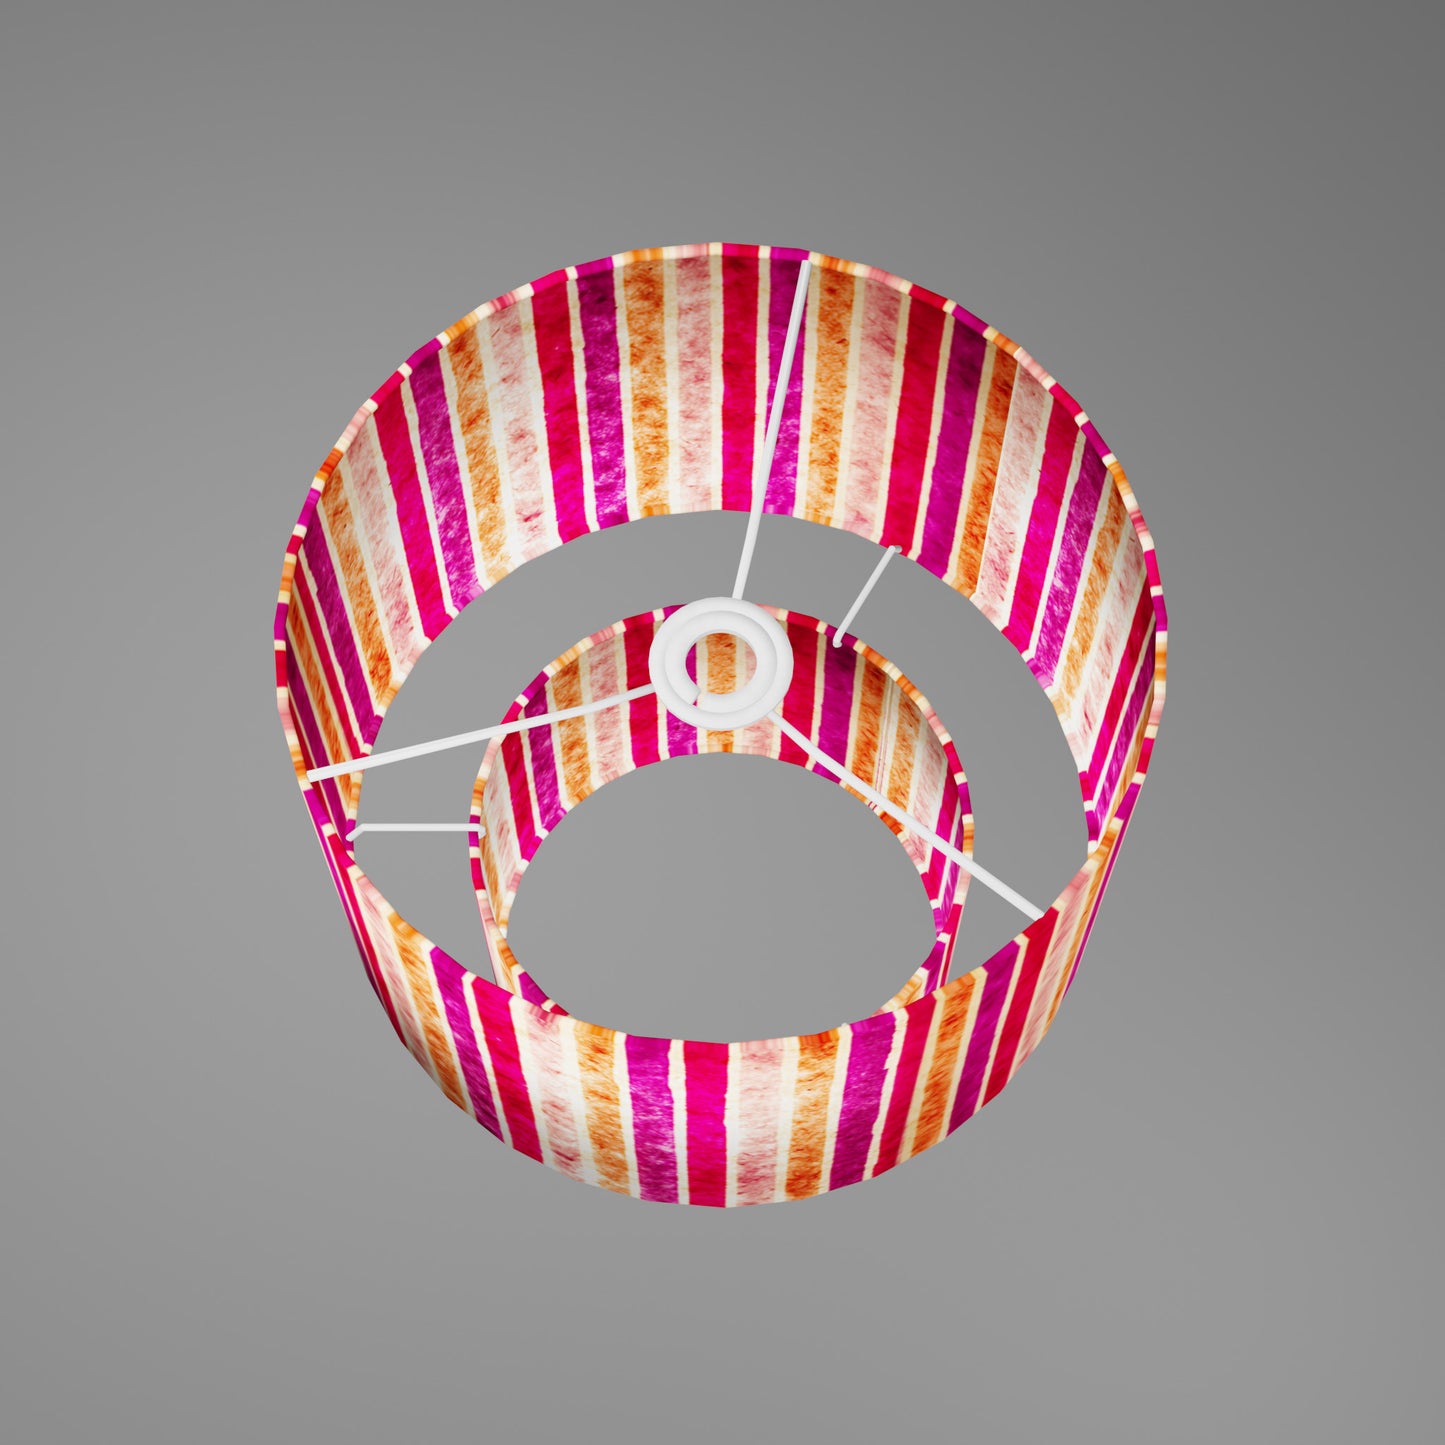 2 Tier Lamp Shade - P04 - Batik Stripes Pink, 30cm x 20cm & 20cm x 15cm